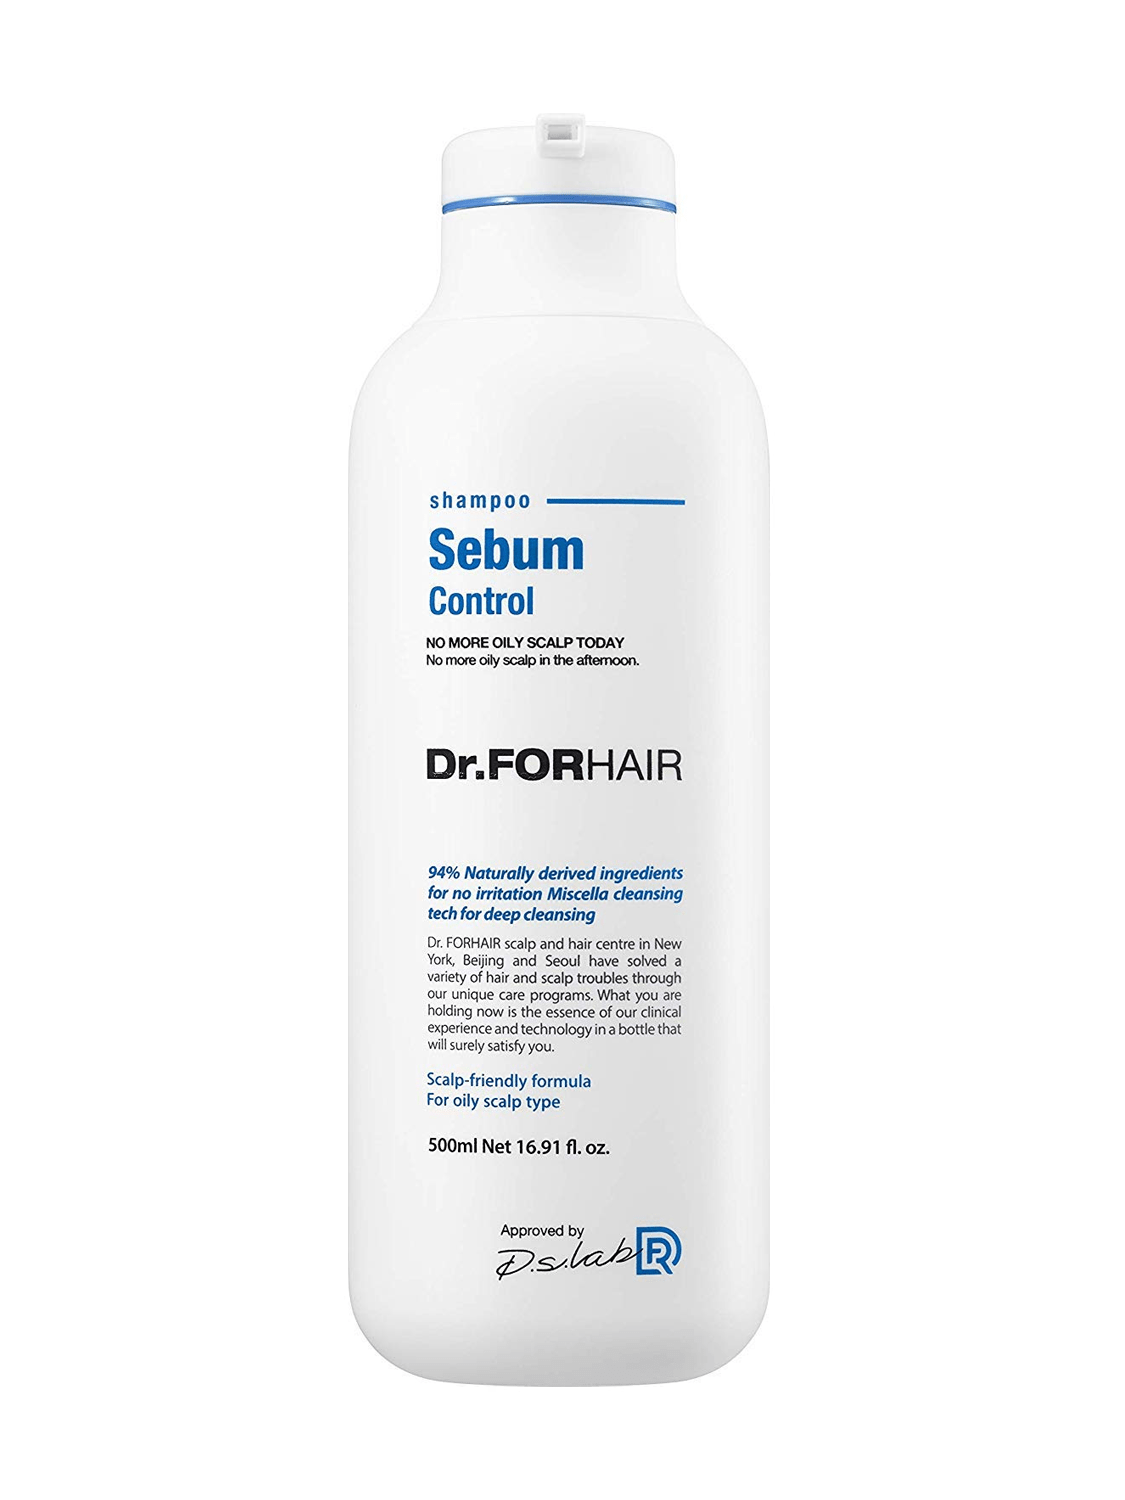 Dr.FORHAIR Sebum Control Shampoo 500ml / 16.91 fl. oz (New Version) - eCosmeticWorld